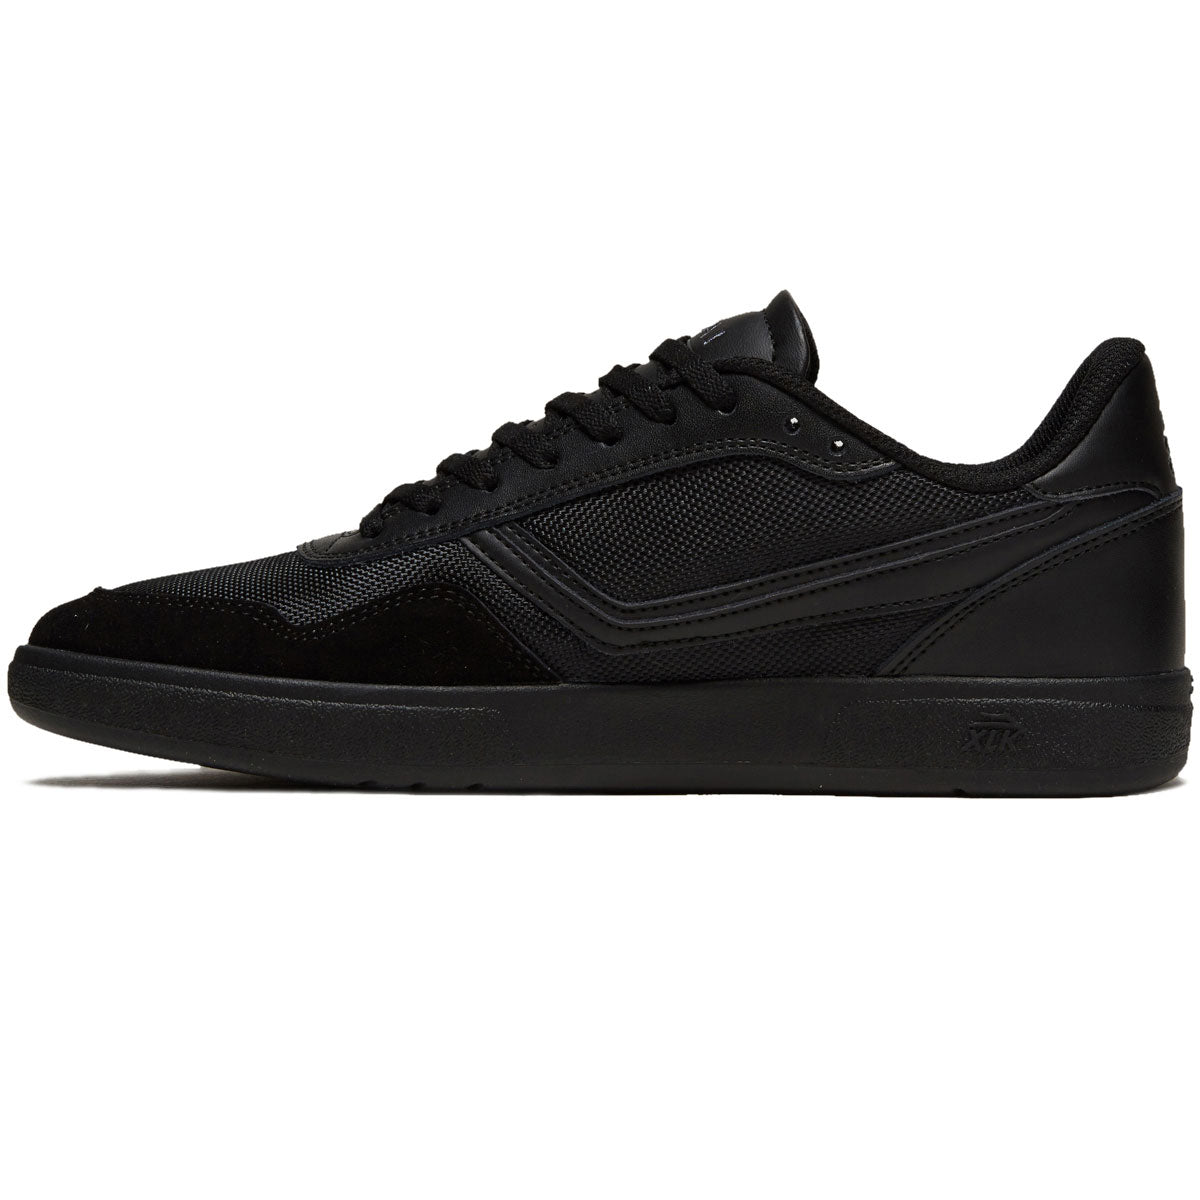 Lakai Terrace Shoes - Black/Black Suede image 2